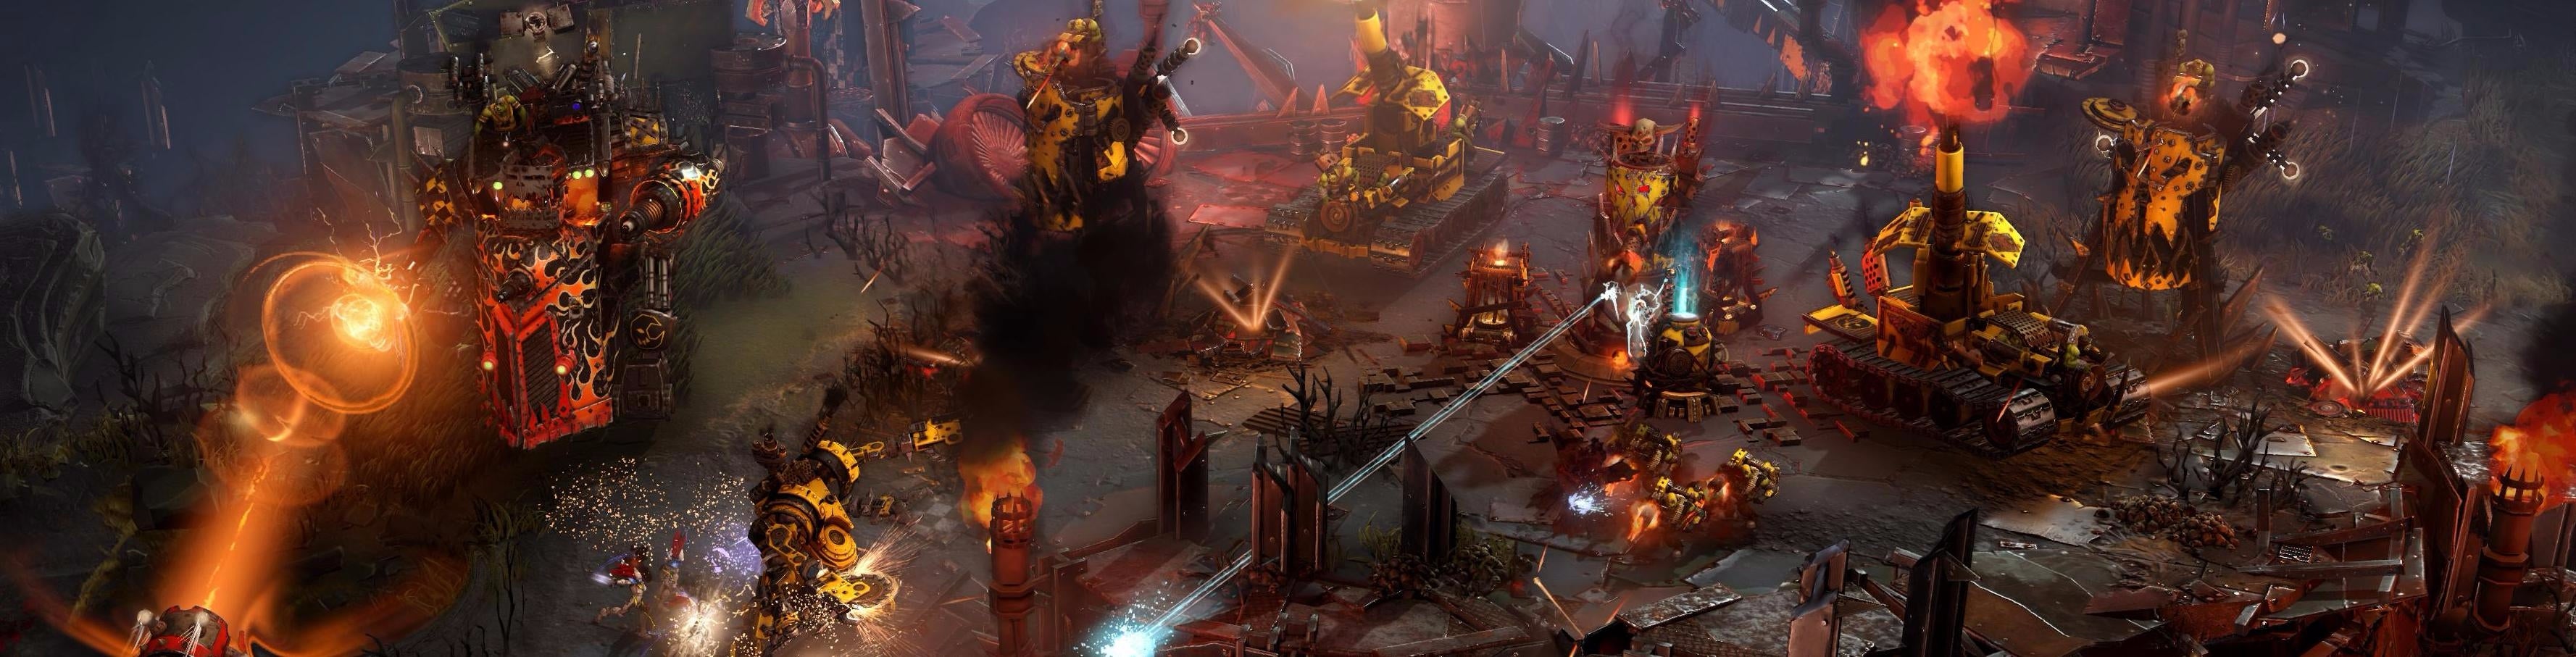 Obrazki dla Warhammer 40,000: Dawn of War III - Orkowie: prezentacja i porady